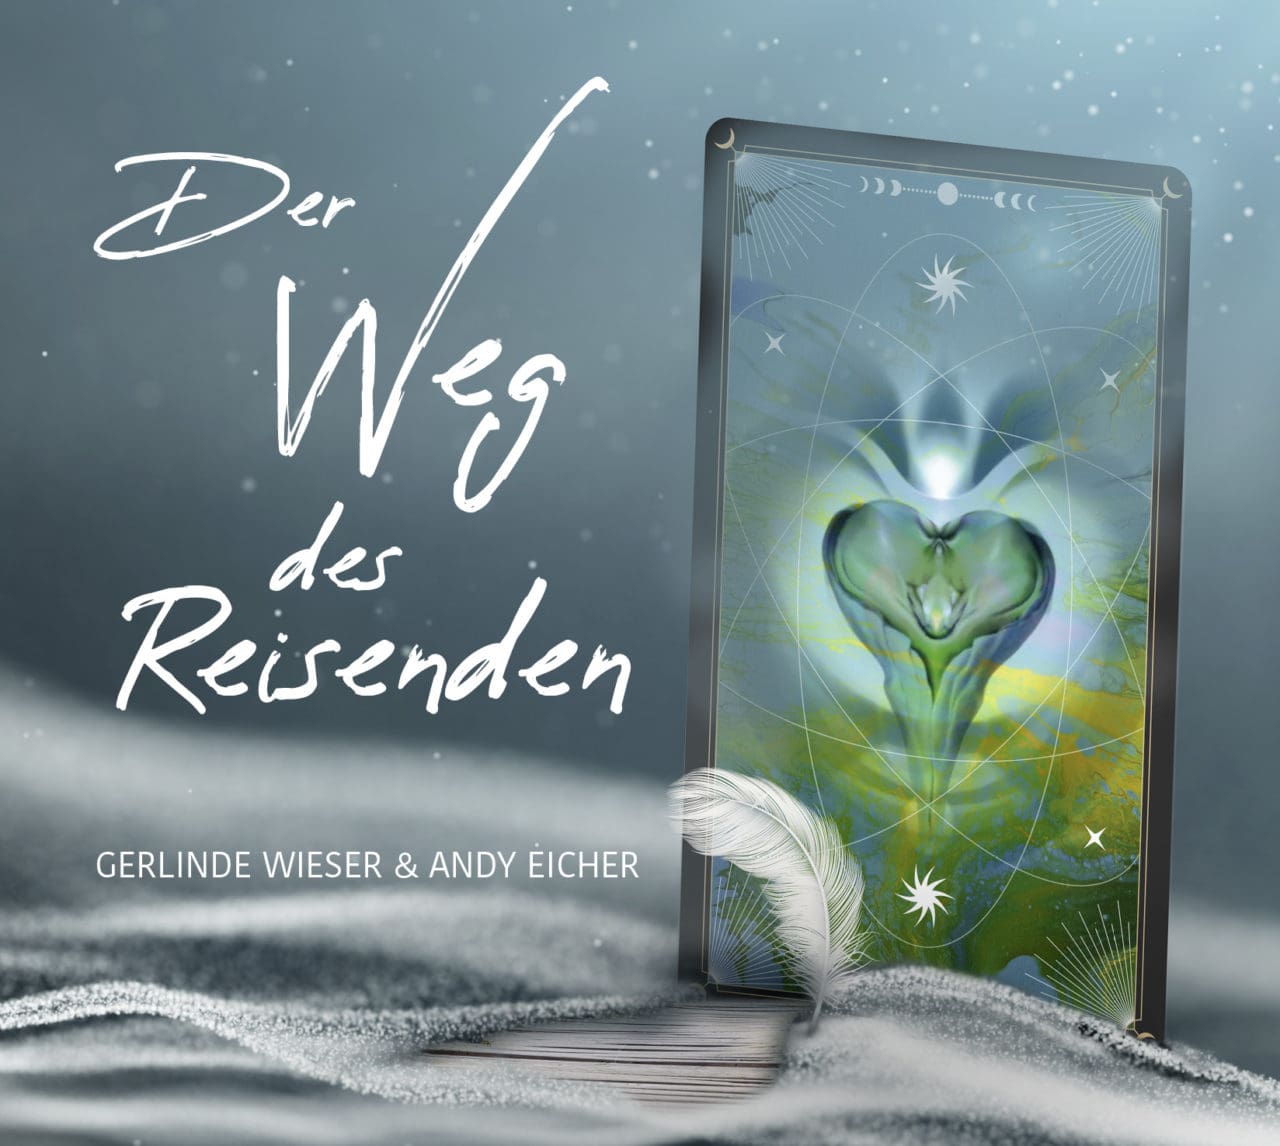 Der Weg des Reisenden Gerlinde Wieser und Andy Eicher